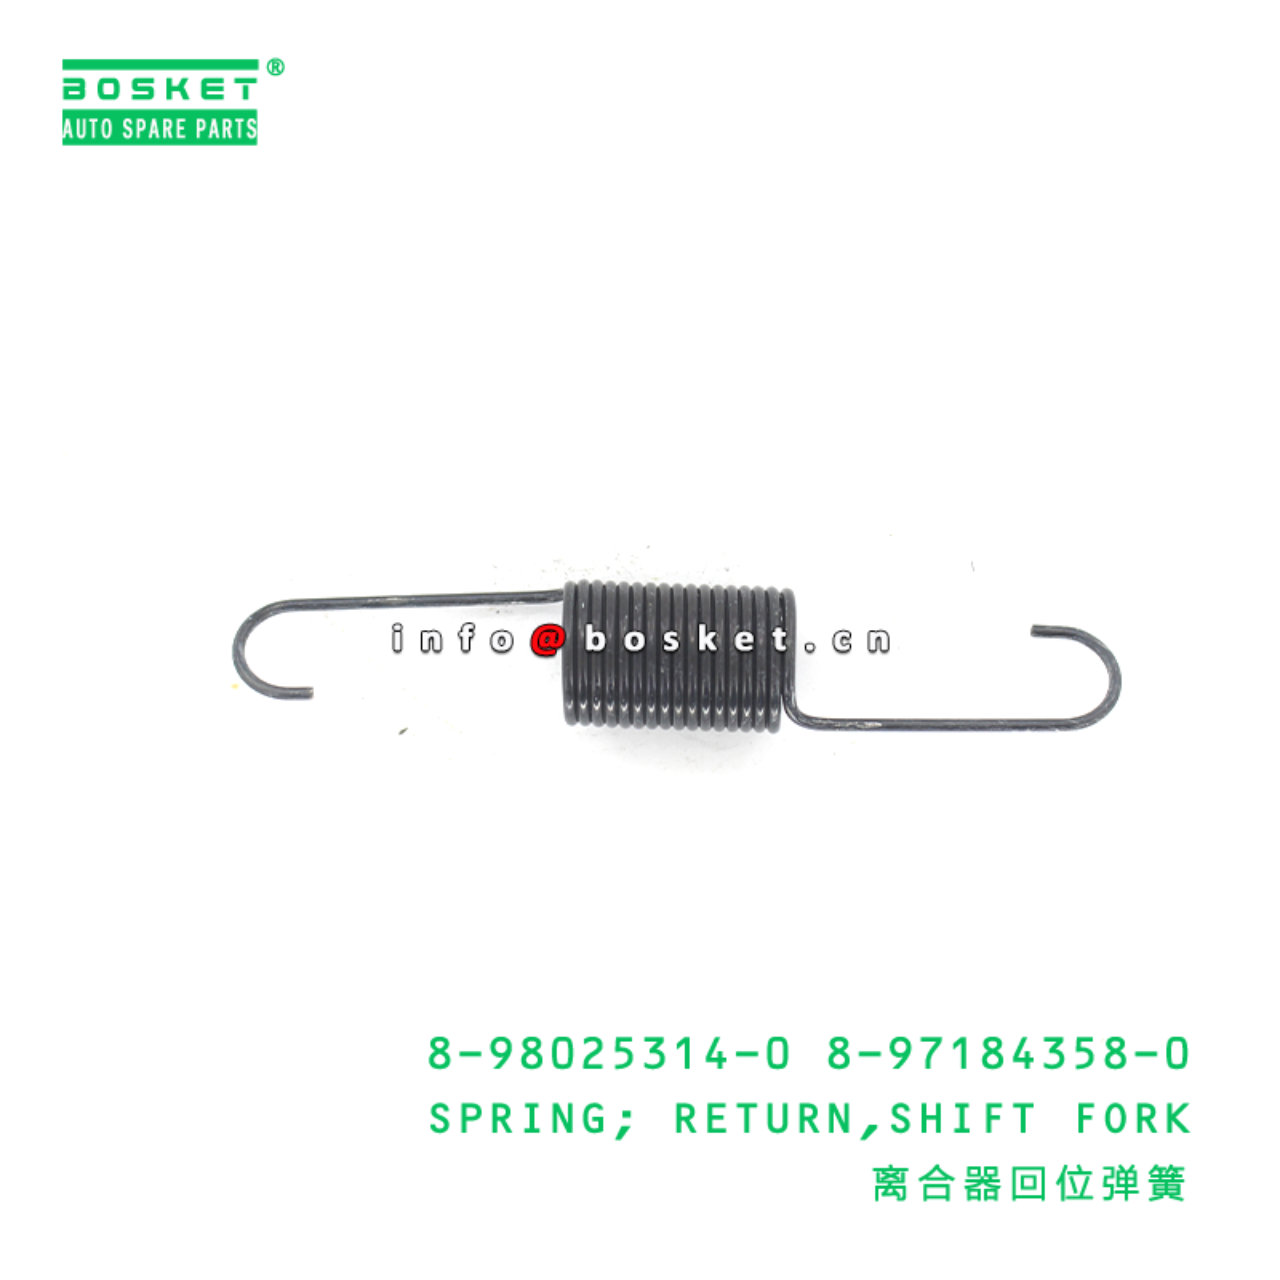 8-98025314-0 8-97184358-0 Shift Fork Return Spring Suitable for 